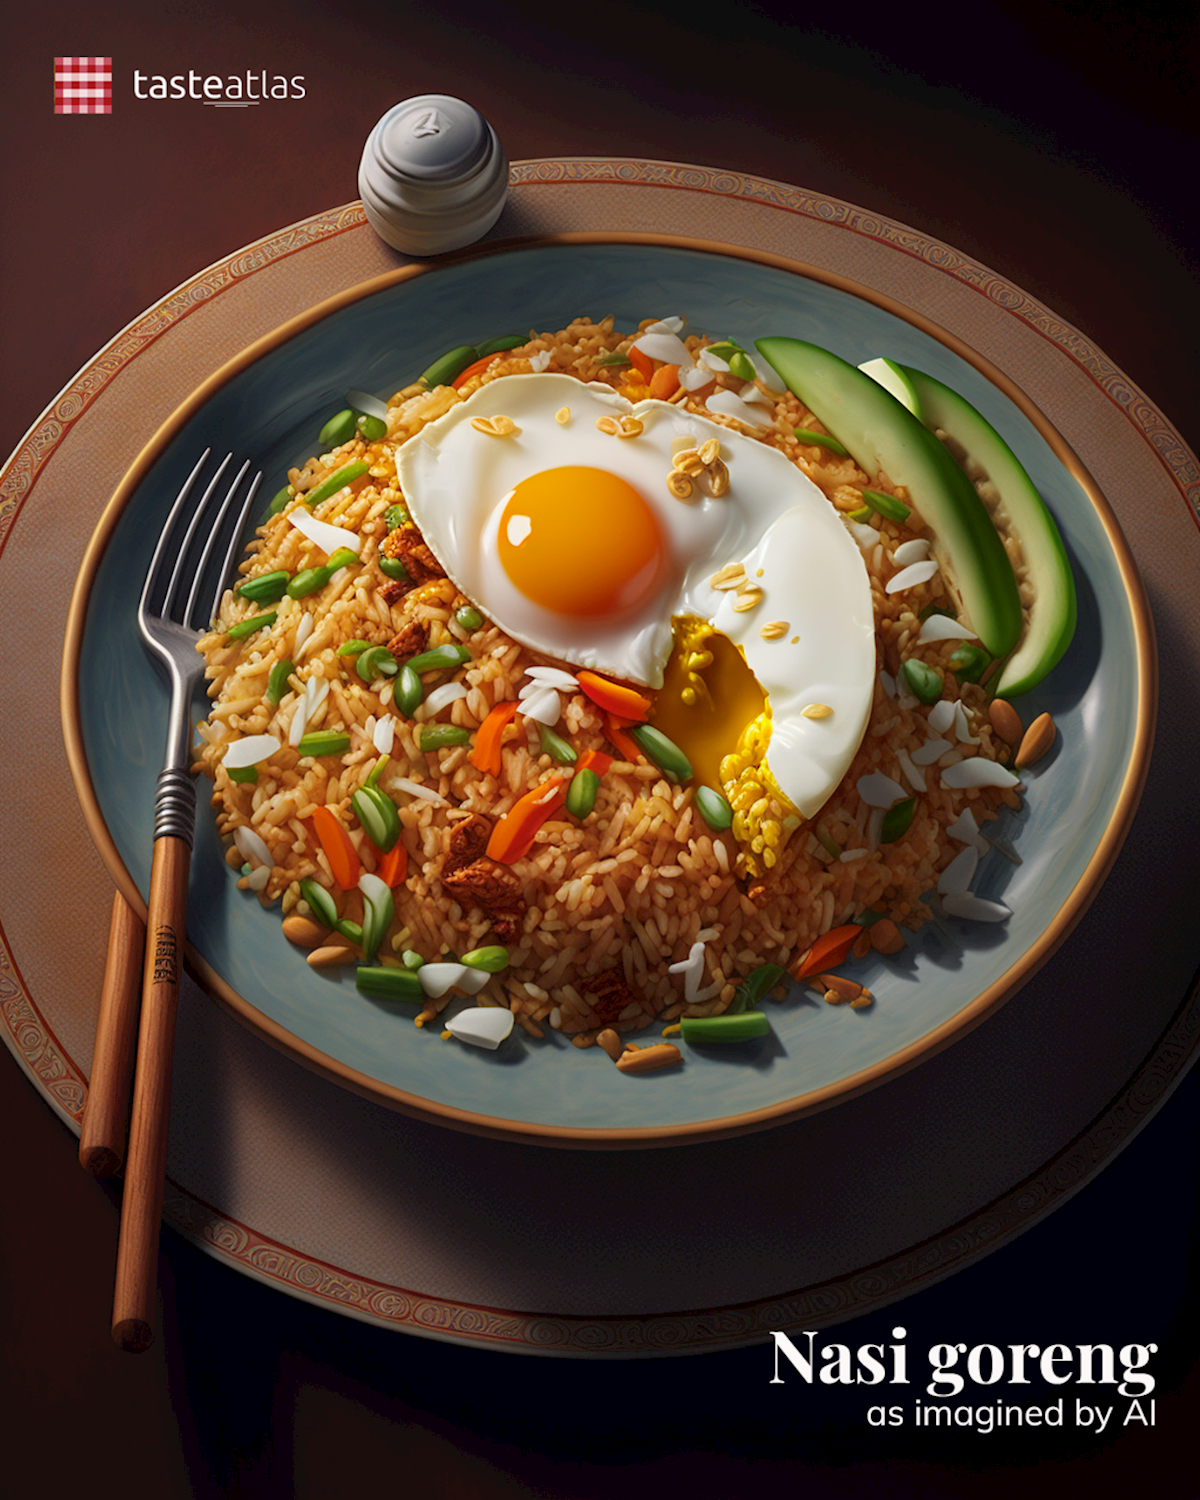 Prompt: Imagine authentic nasi goreng